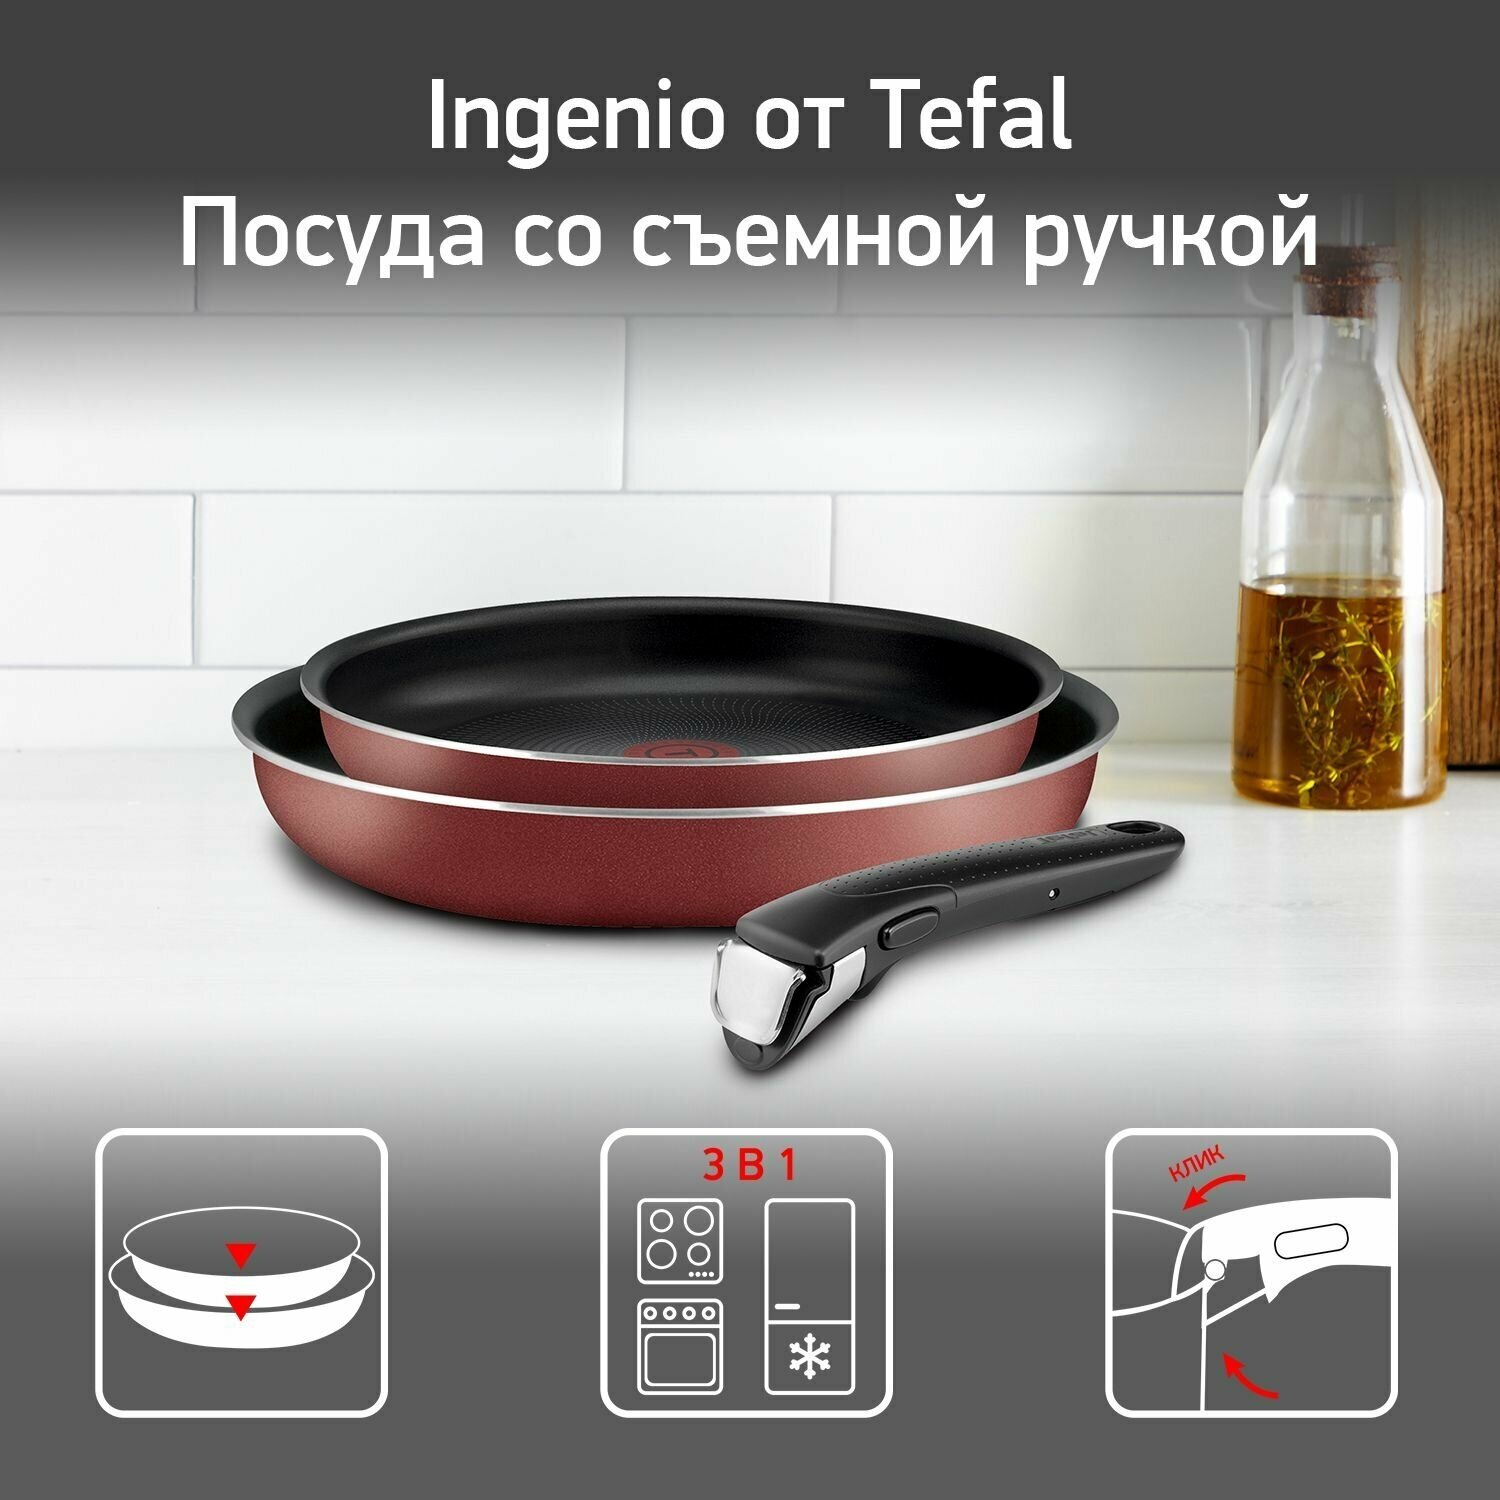 Набор посуды со съемной ручкой Tefal Ingenio RED 5 04175820, 24/28 см, с индикатором температуры и антипригарным покрытием, для газовых, электрических плит